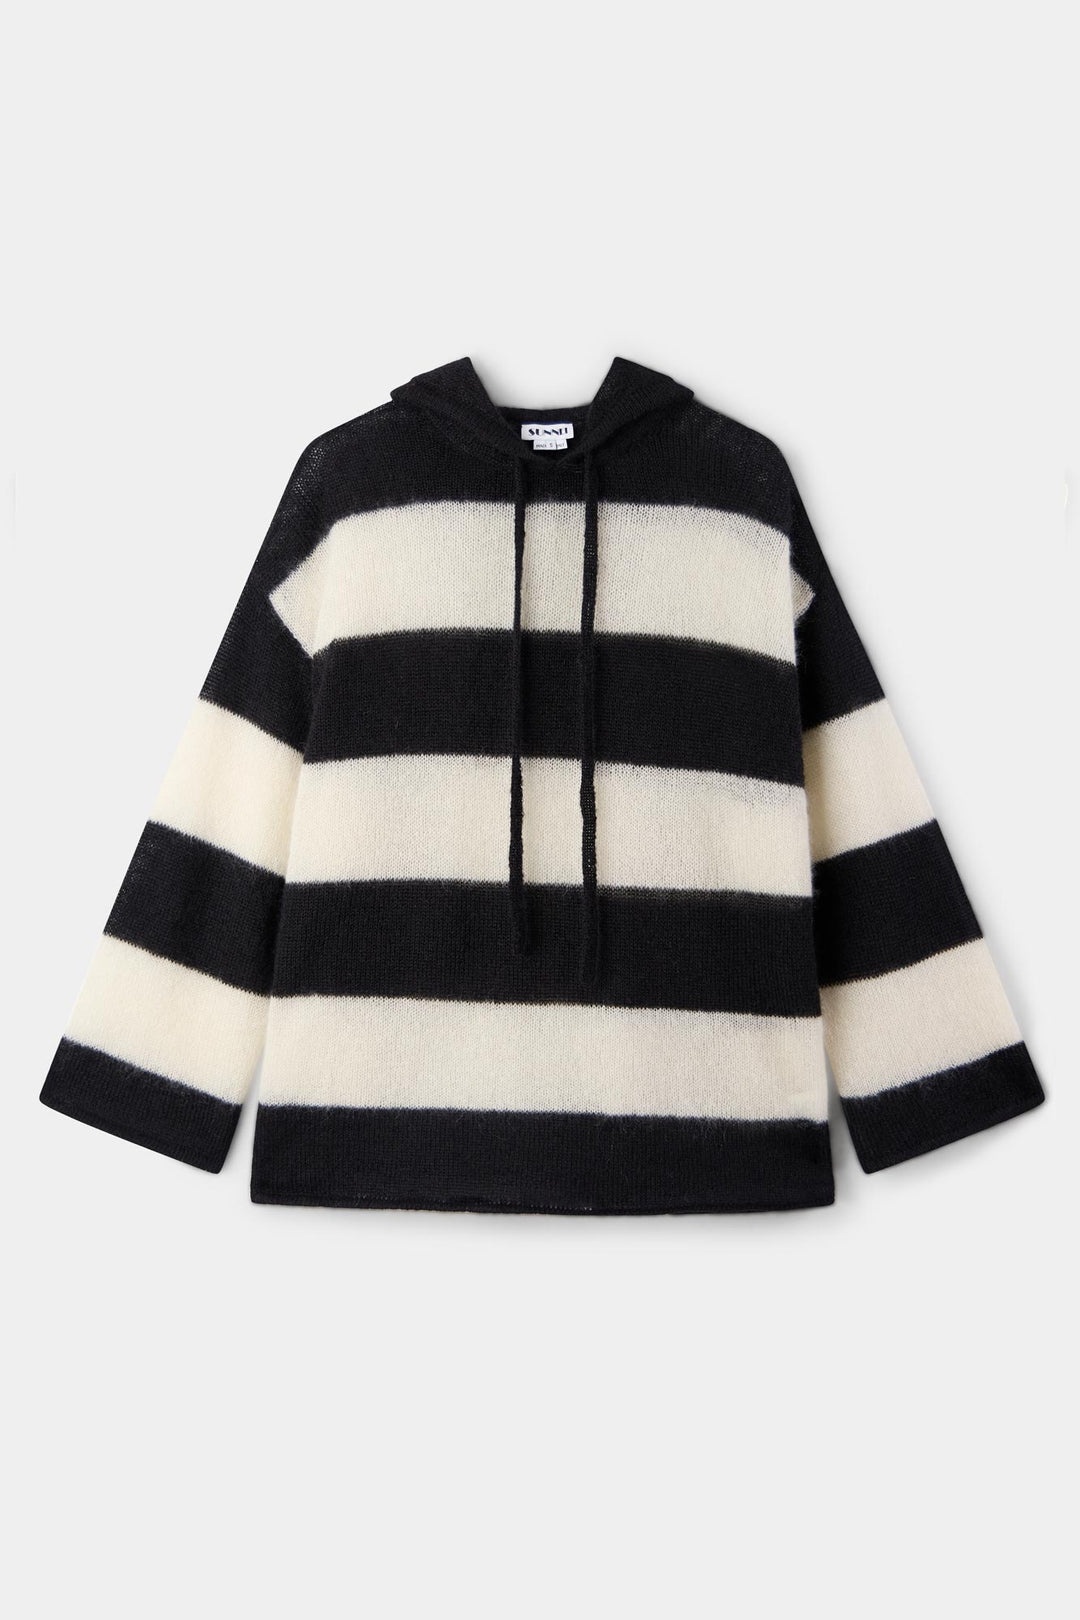 HOODIE / wool / cream & black stripes - 2